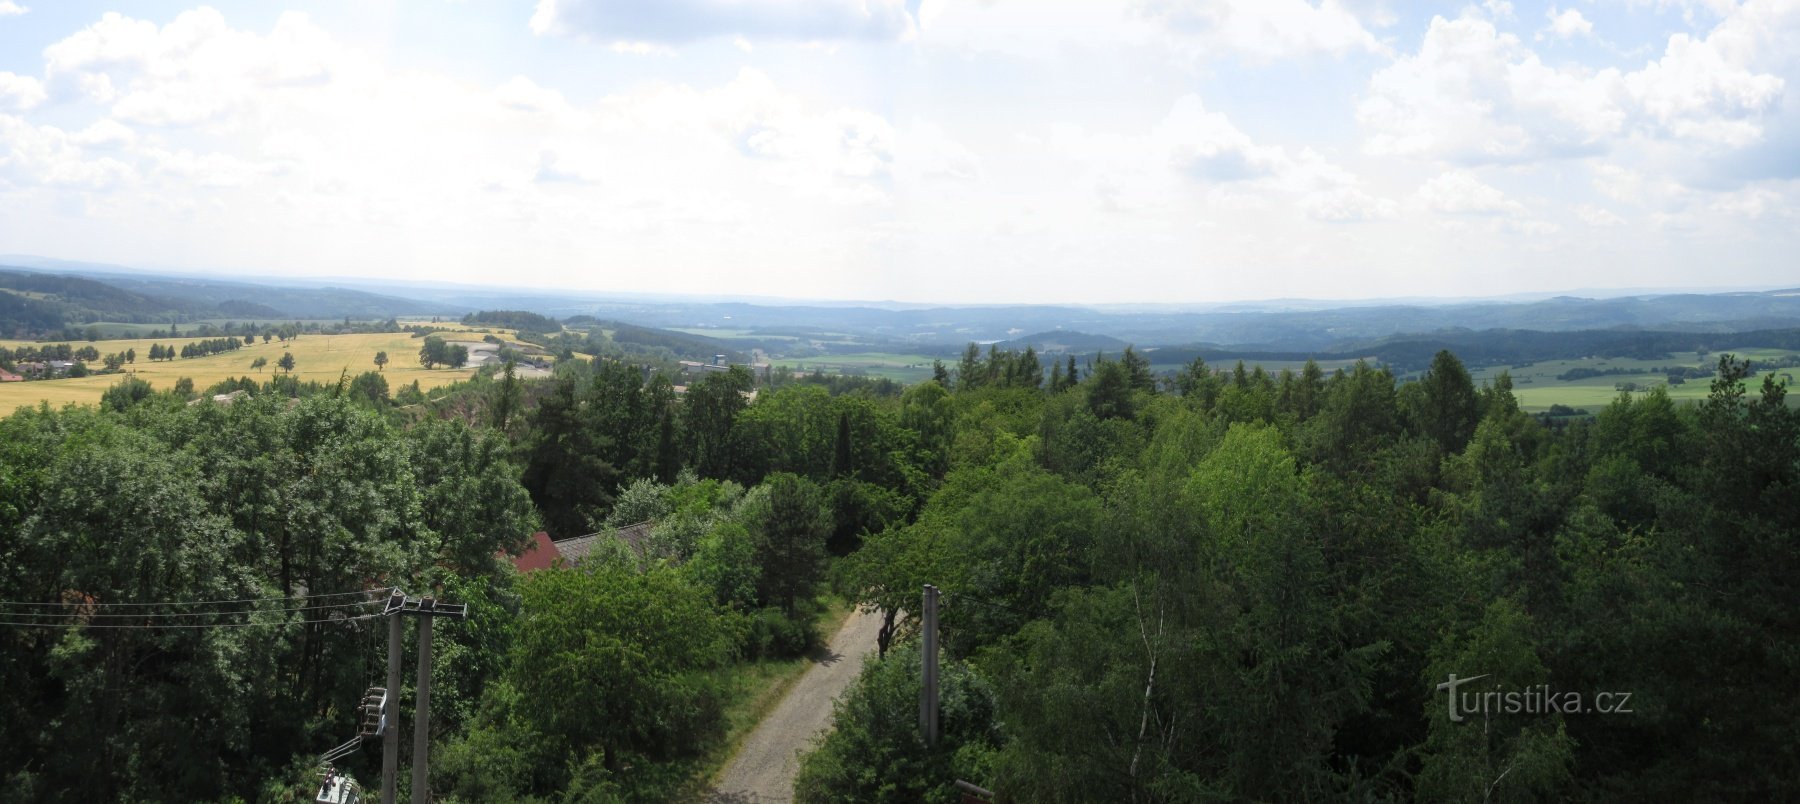 Onen svět - Langin näkötorni, myös Onen svět näkötorni lähellä Lašovicea